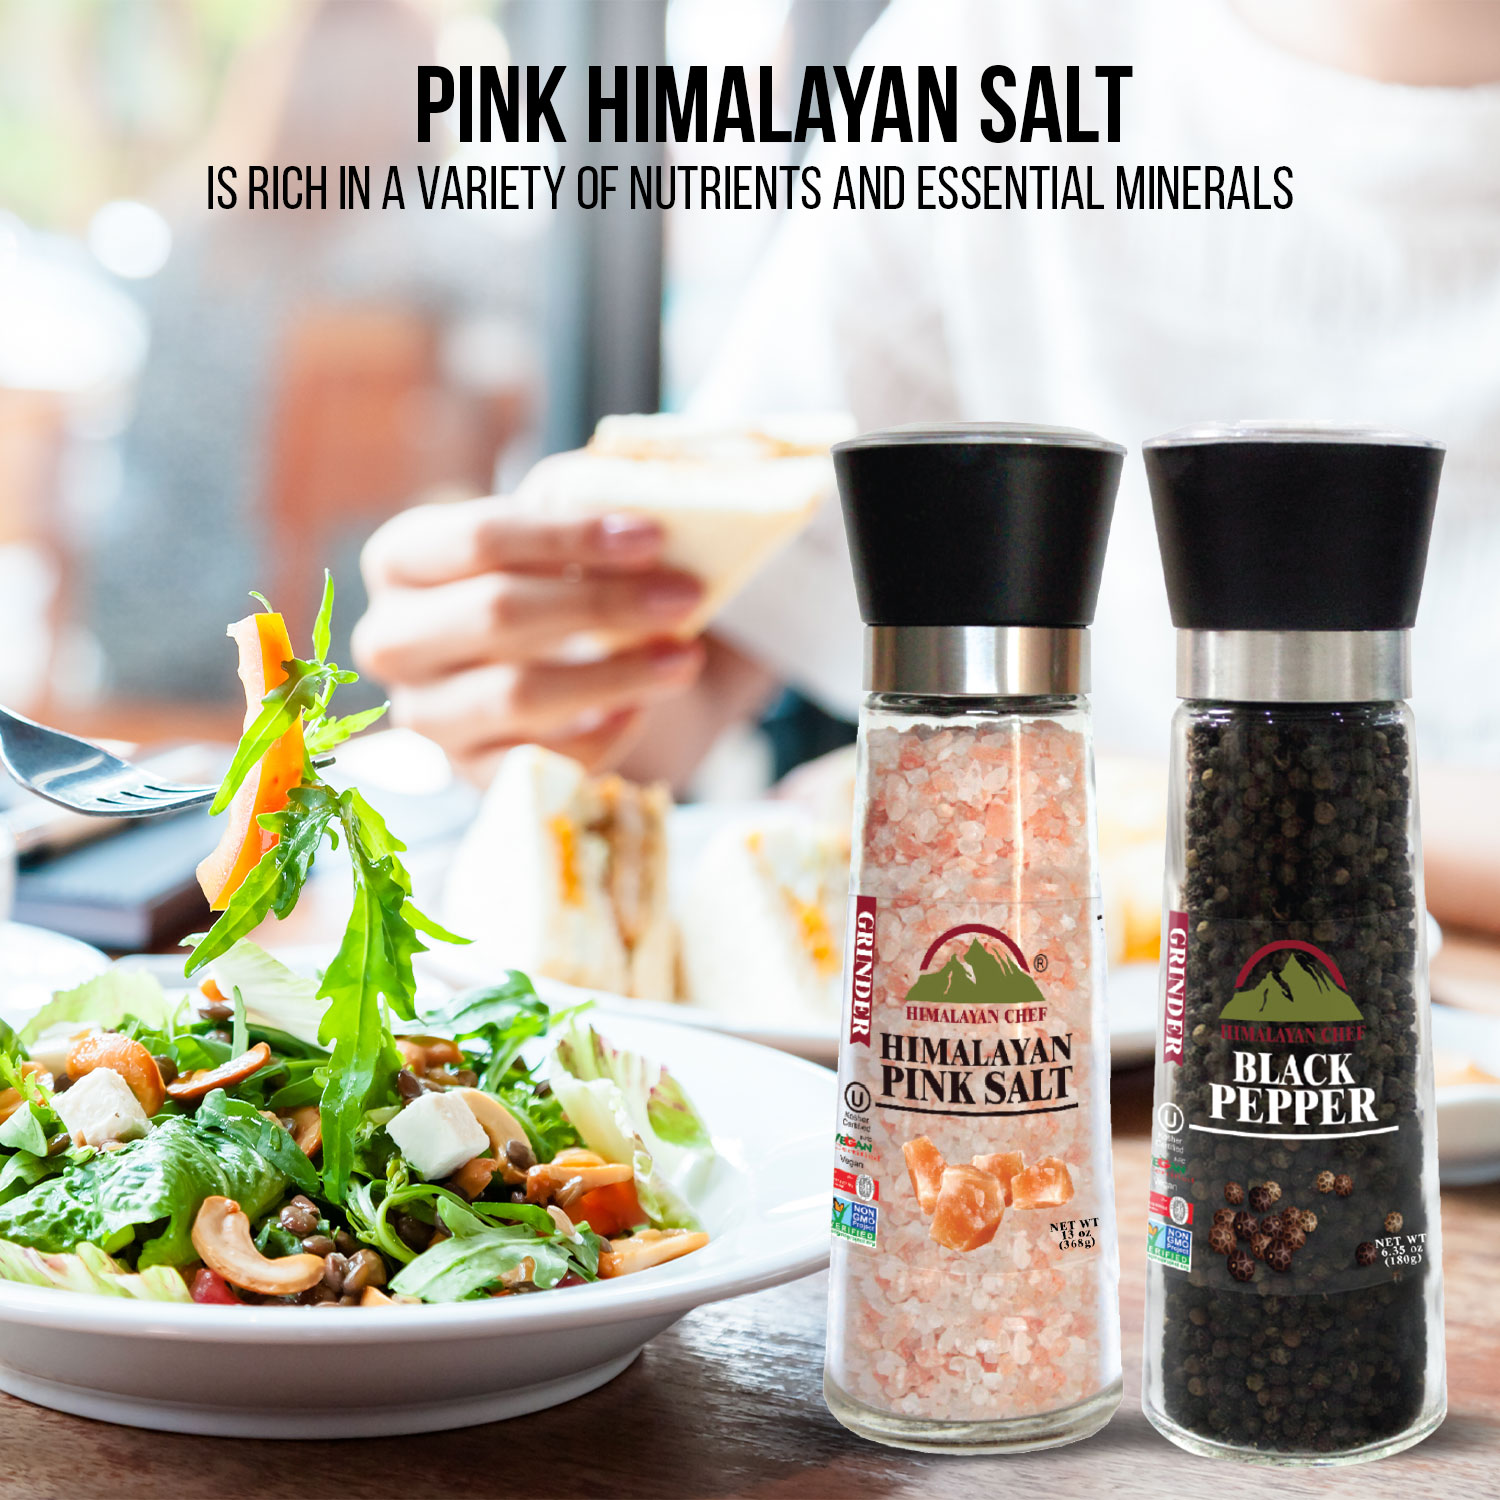 Himalayan Chef Salt Grinder, Refillable-13 Ounce, 1 - Harris Teeter